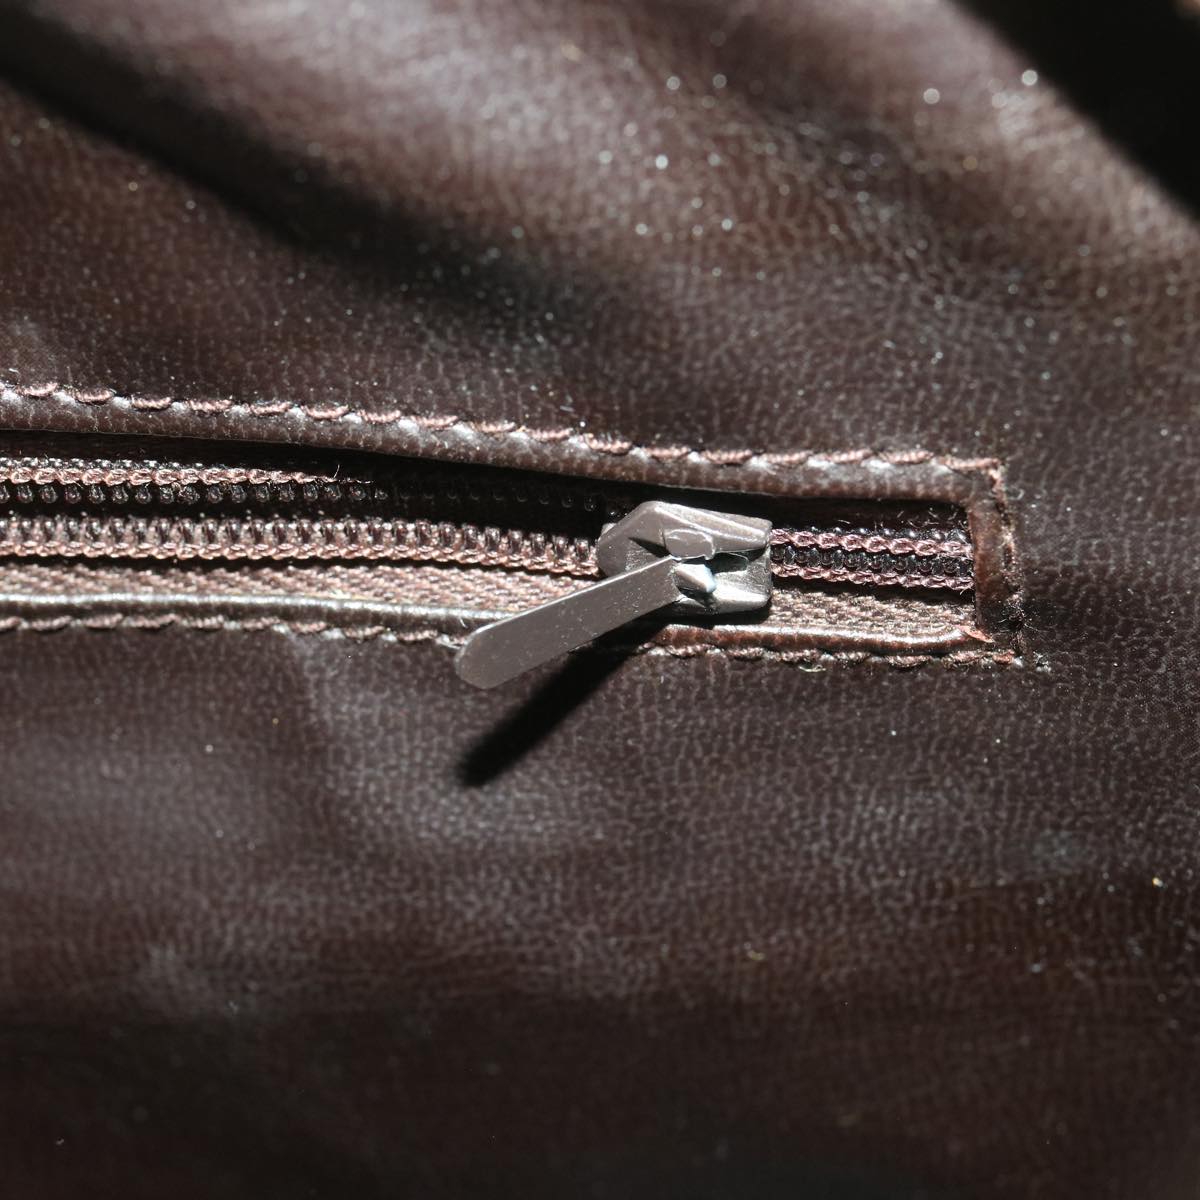 CELINE Macadam Canvas Shoulder Bag PVC Leather Beige Auth 37414